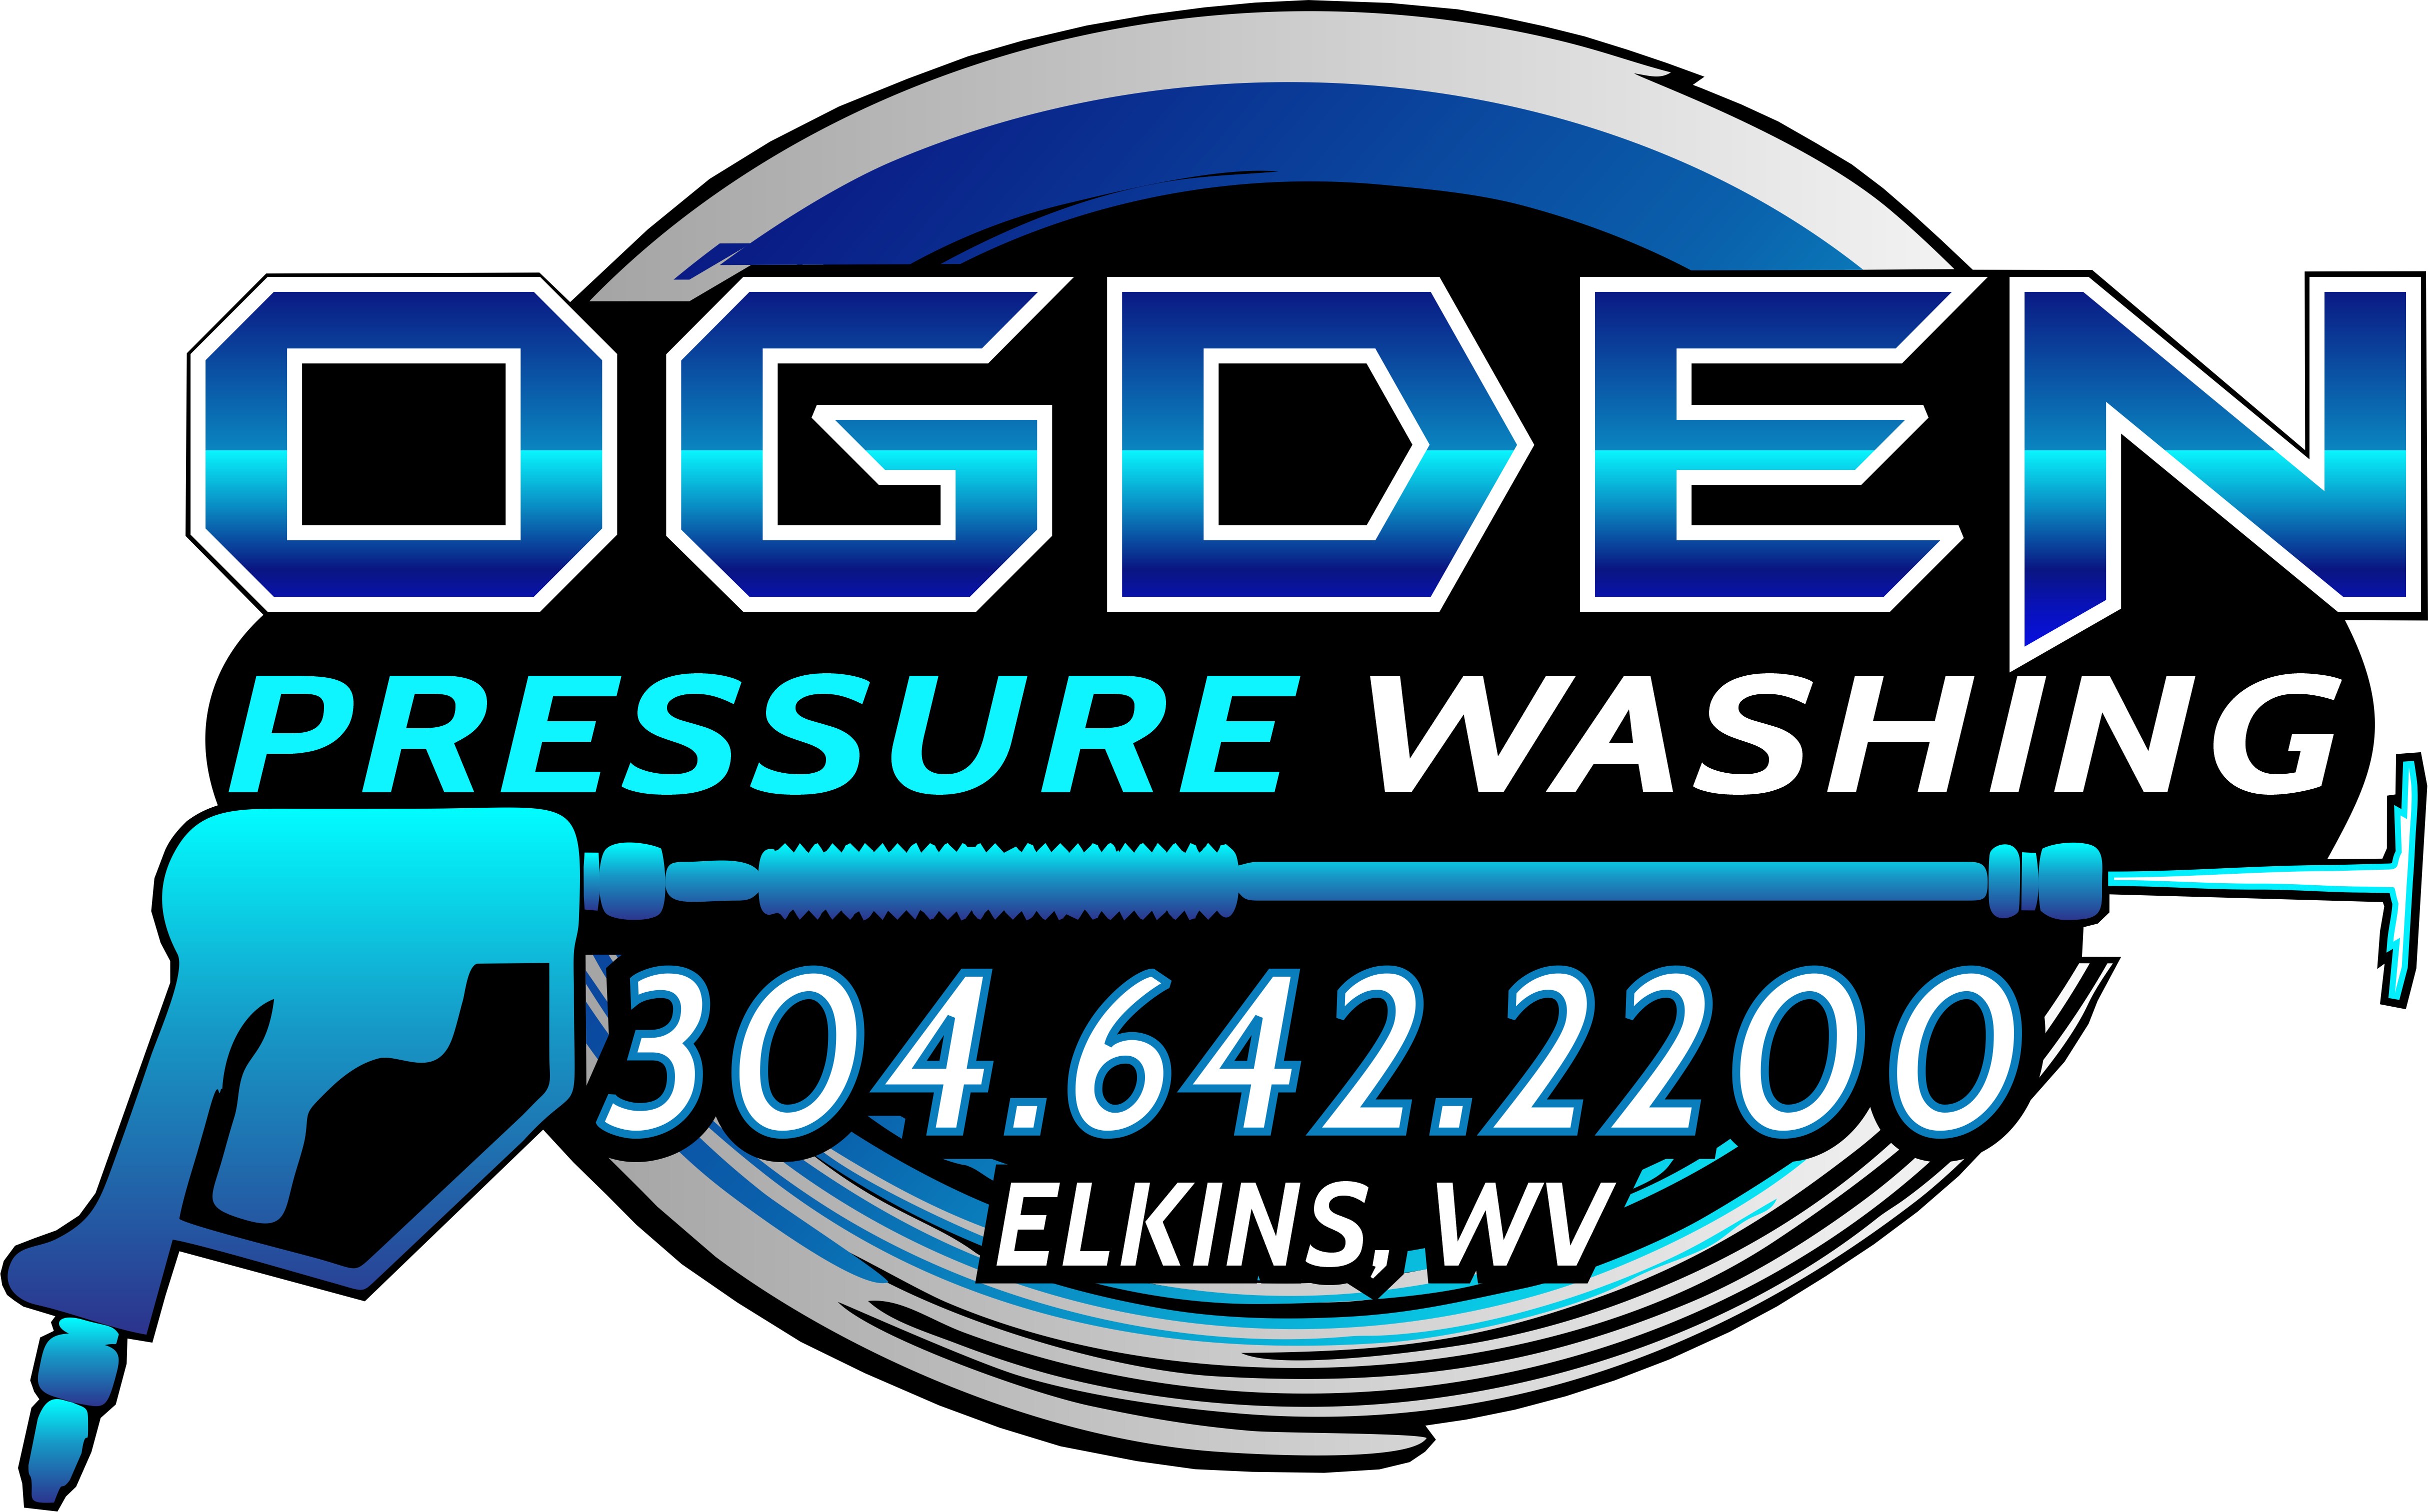 ogre logo commercial pressure washing